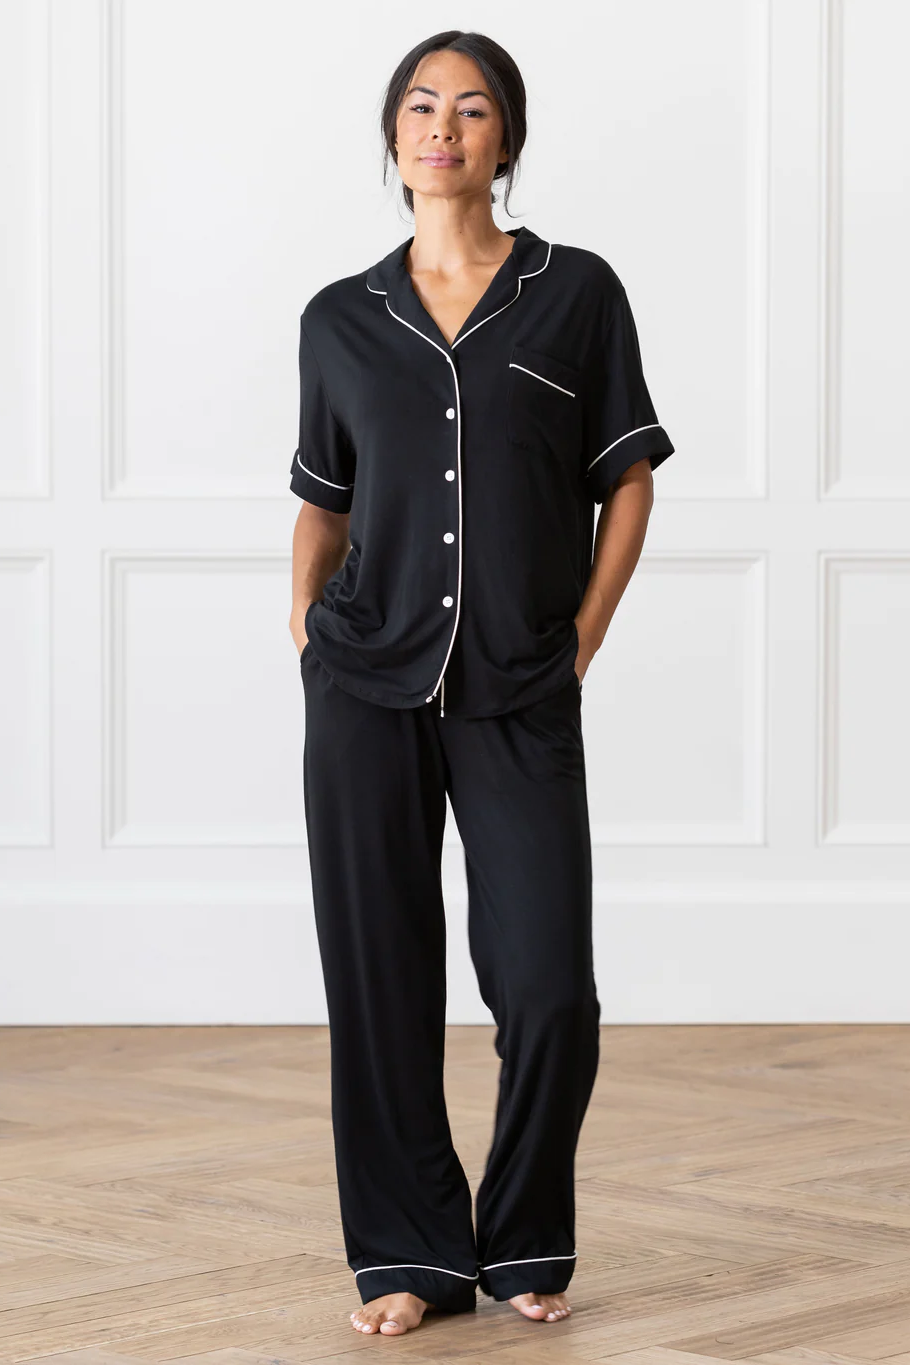 Long Sleeve Silk Top Pajamas Set With Bra — My Comfy Pajama